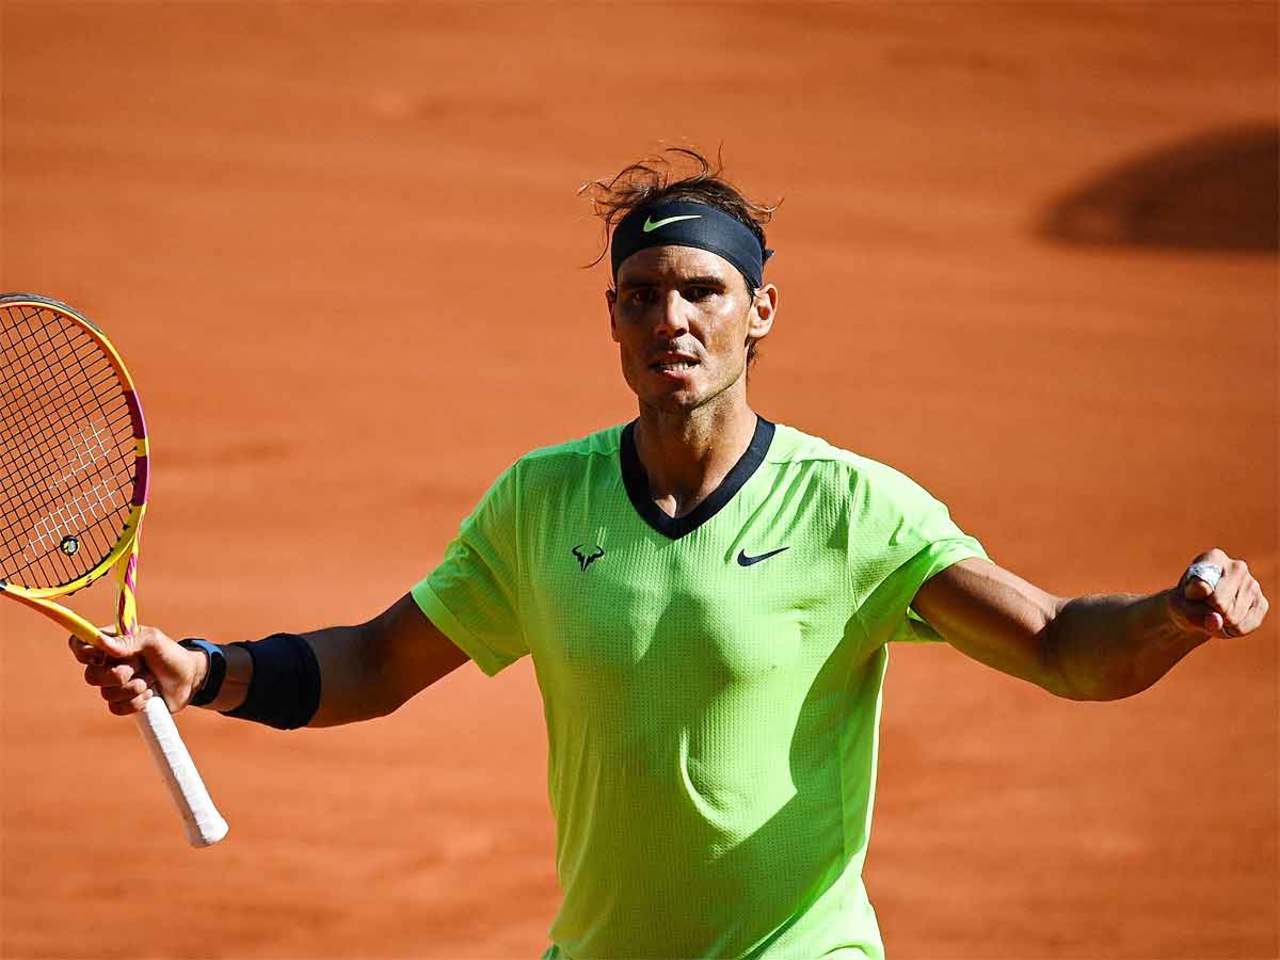 French Open Rafael Nadal quells Diego Schwartzman challenge Tennis News 